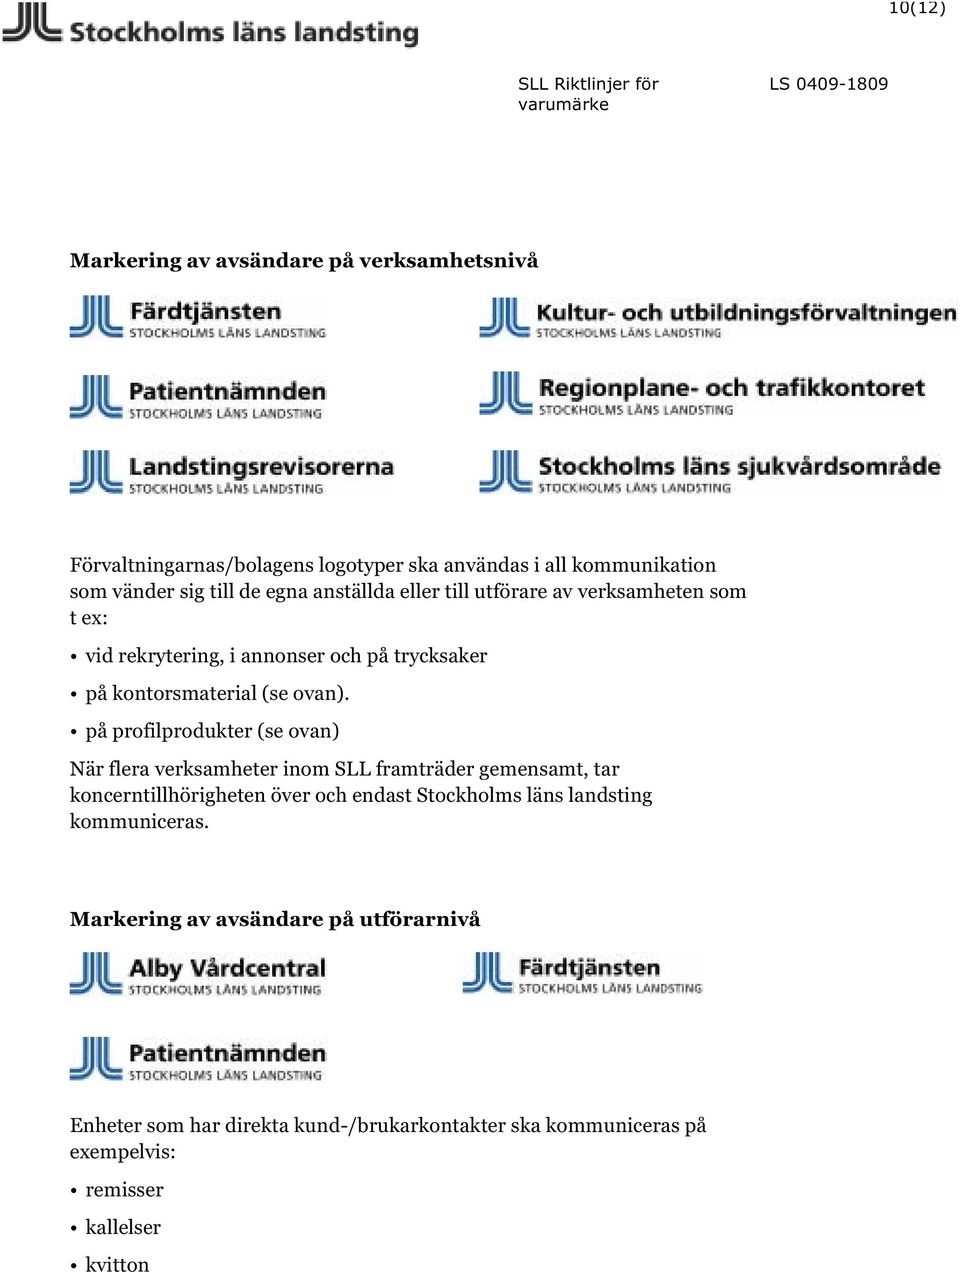 på profilprodukter (se ovan) När flera verksamheter inom SLL framträder gemensamt, tar koncerntillhörigheten över och endast Stockholms läns